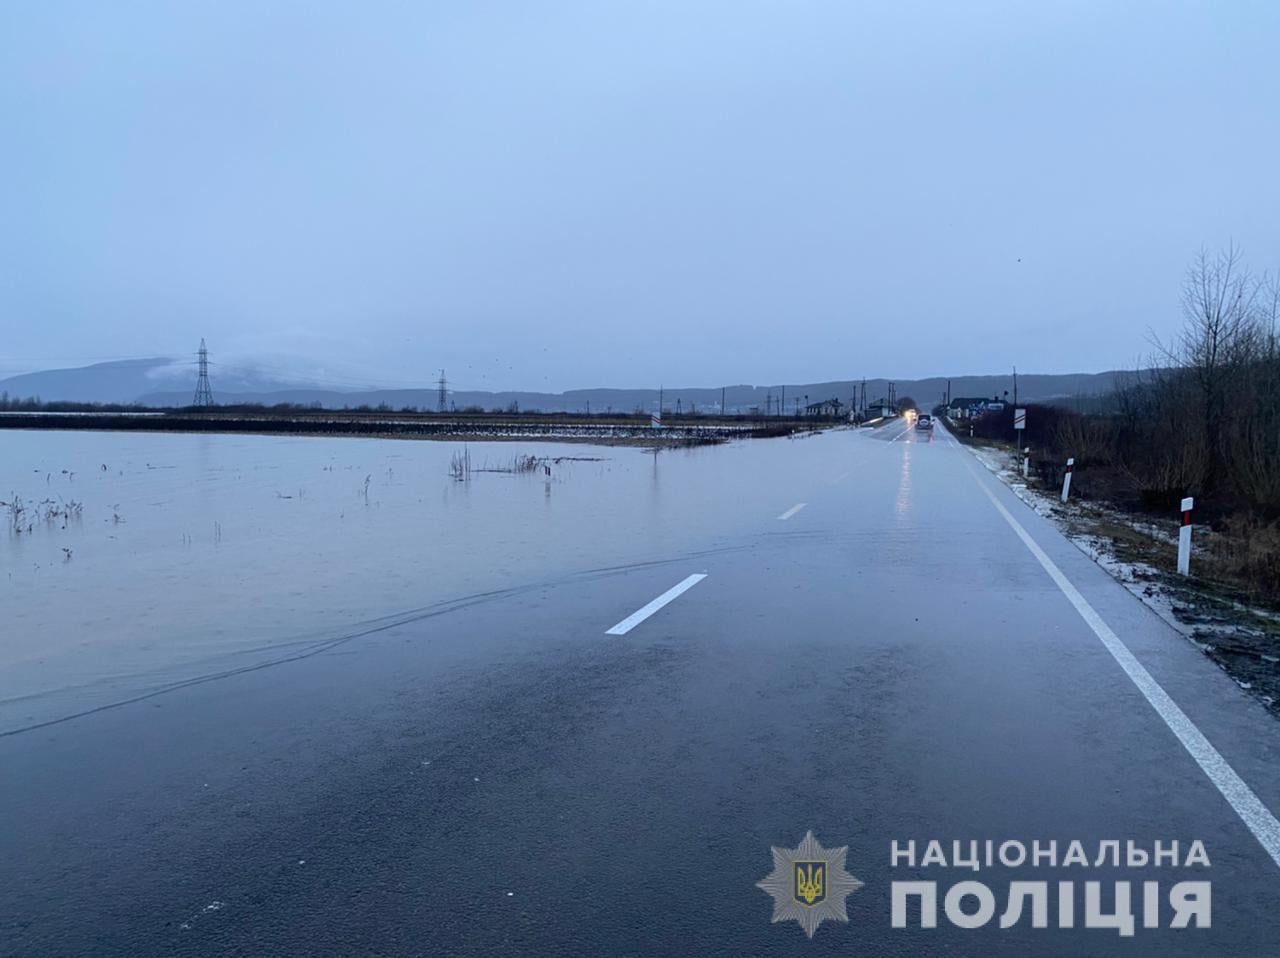 Закарпатська поліція продовжує контролювати рух транспорту на ділянках, де через негоду відбулися підтоплення.

